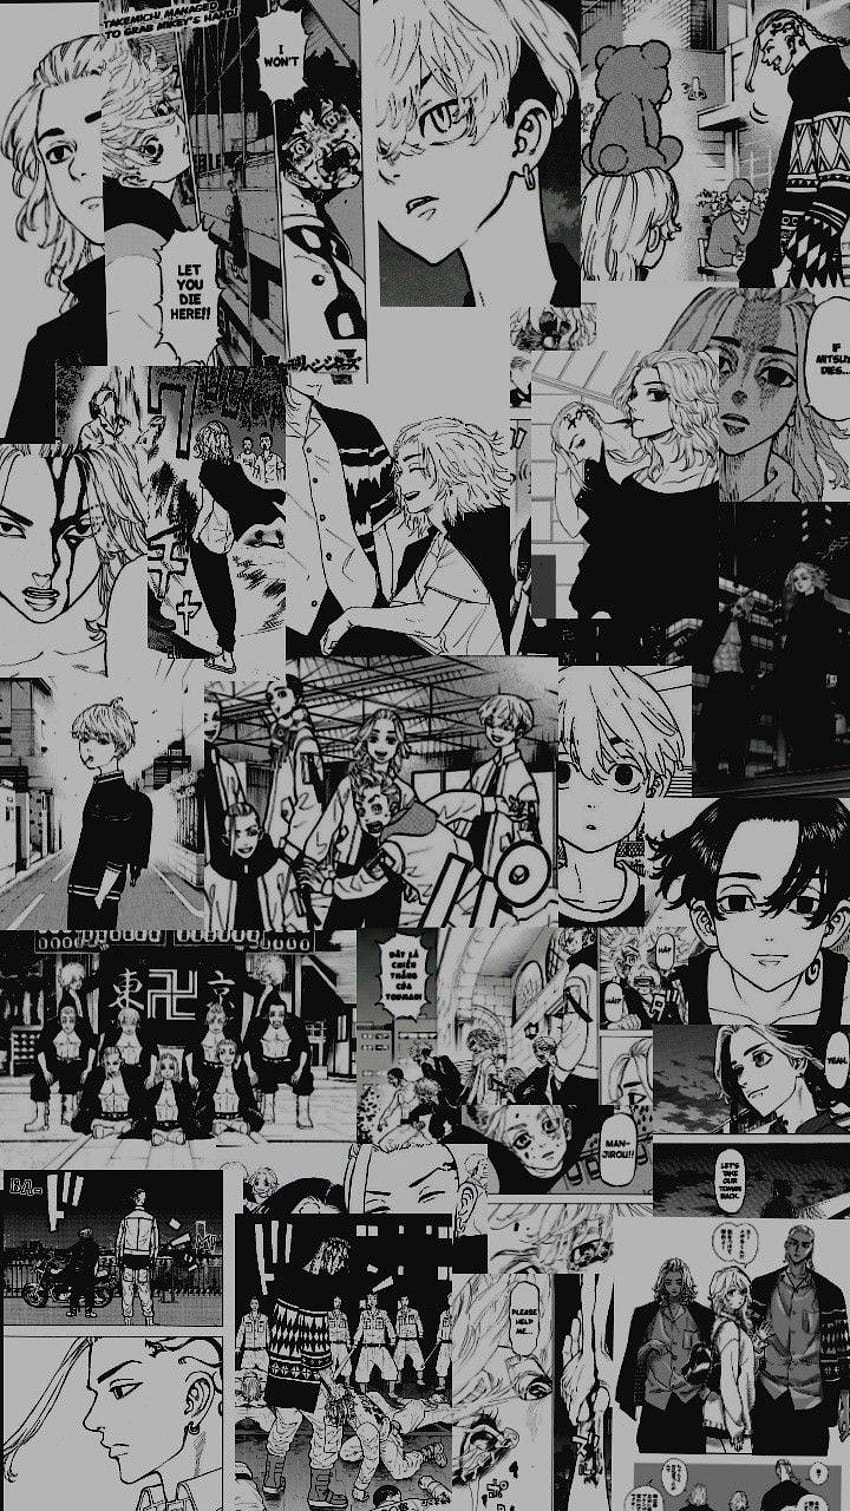 Anime tokyo revengers manga HD phone wallpaper - Hãy thưởng thức bức tranh nền đầy màu sắc và chi tiết của Anime, manga, Tokyo Revengers. Với độ phân giải cao, bức tranh nền sẽ giúp cho màn hình điện thoại của bạn trở nên sống động và đặc biệt hơn.